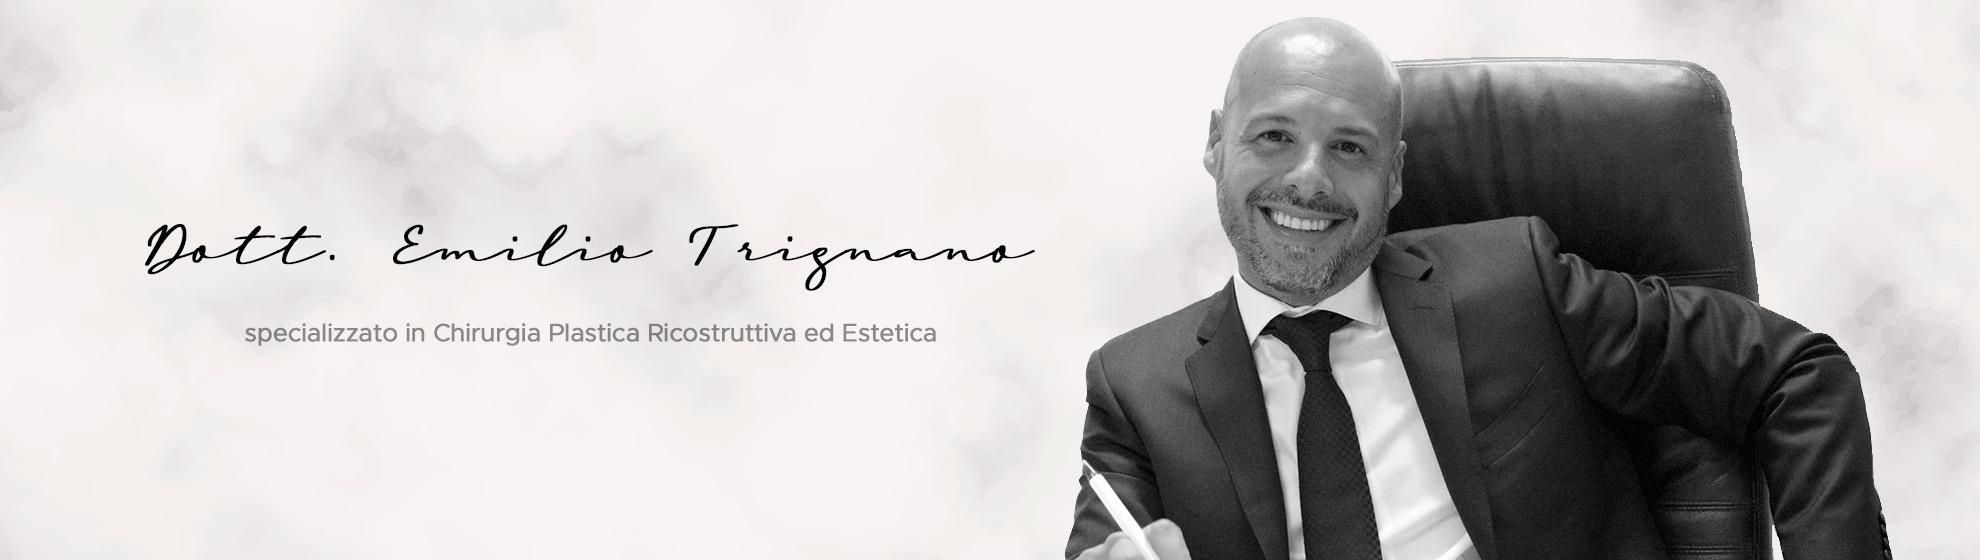 Dott. Emilio Trignano